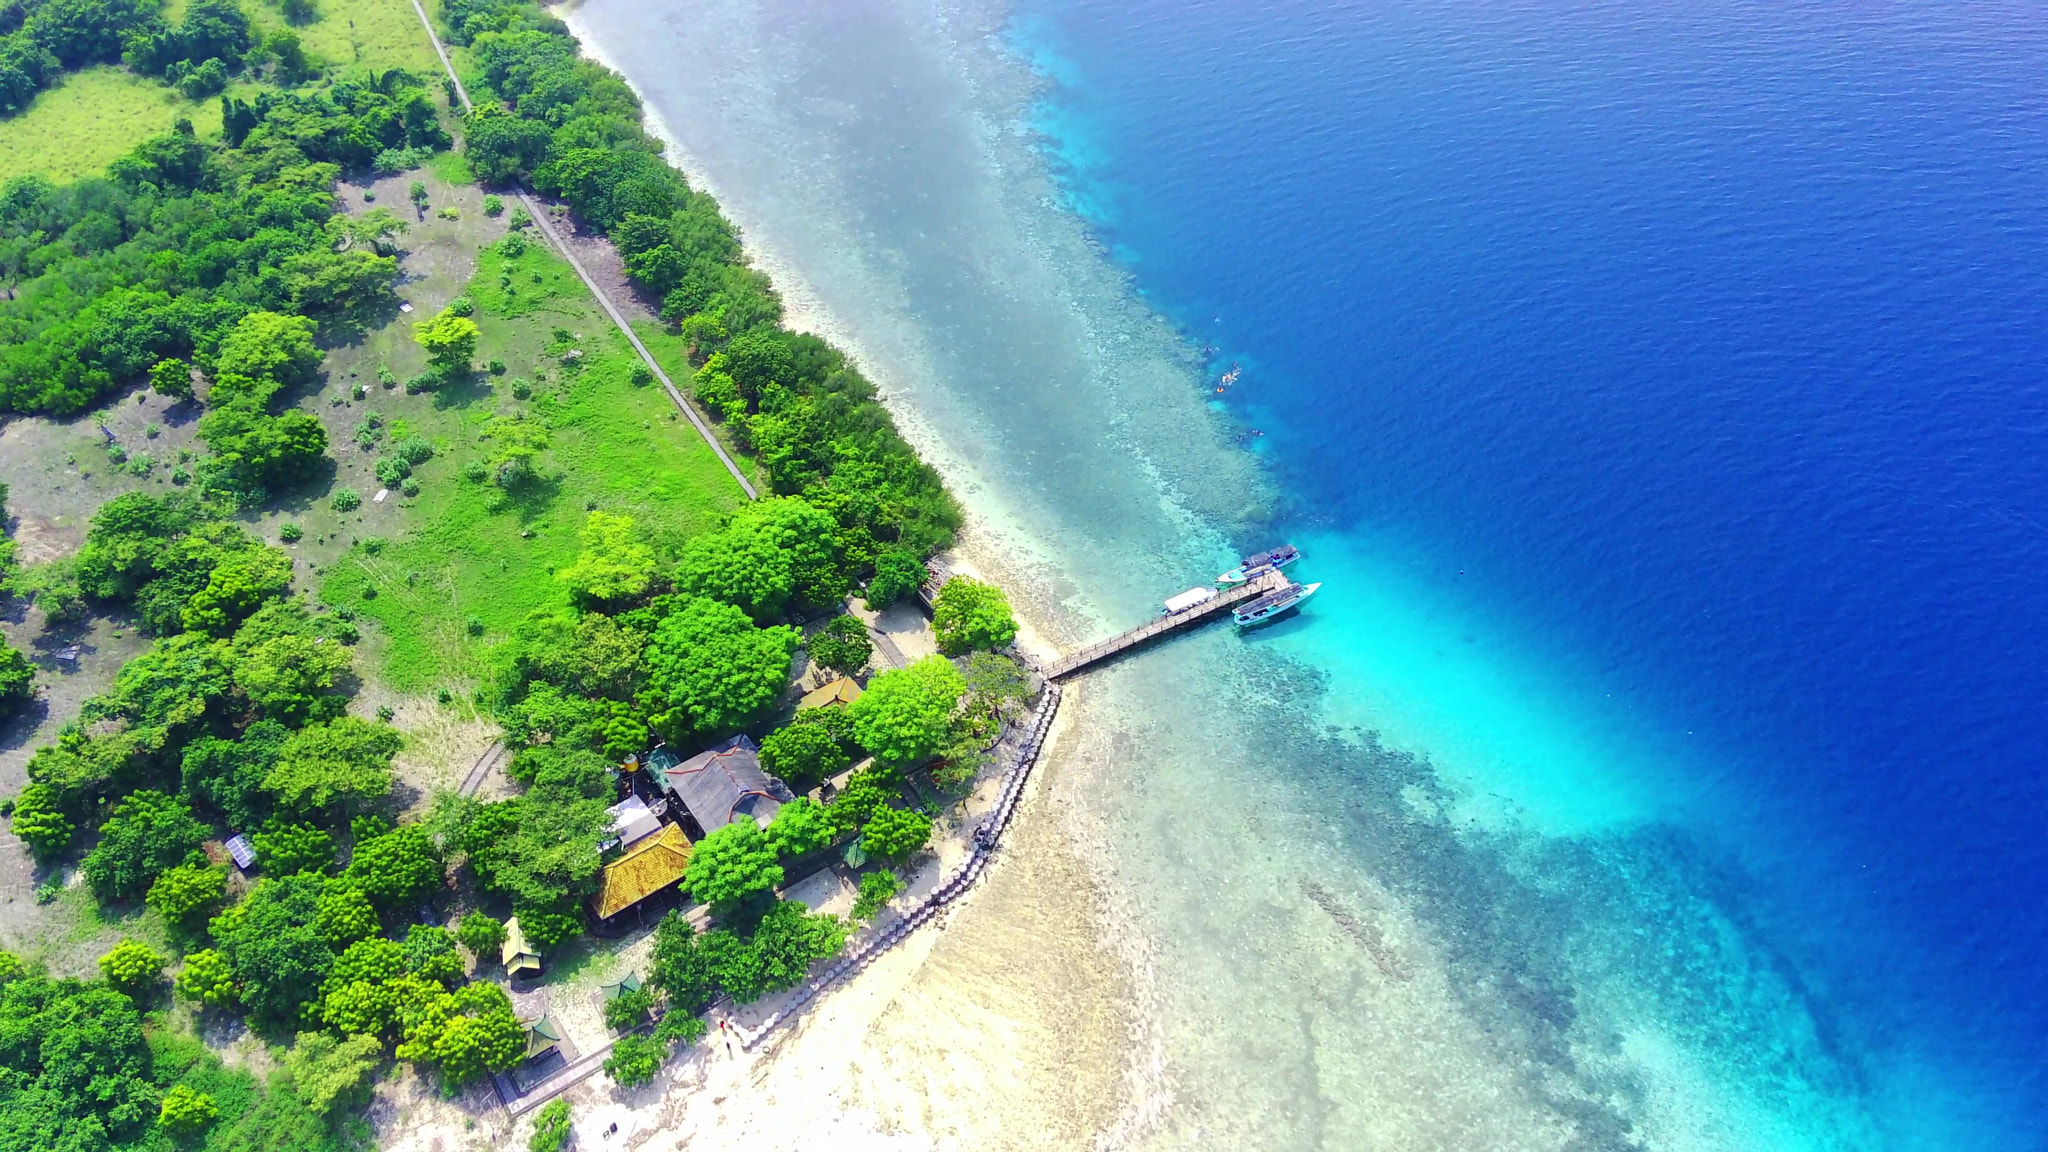 Menjangan Island, West Bali National Park, Indonesia.